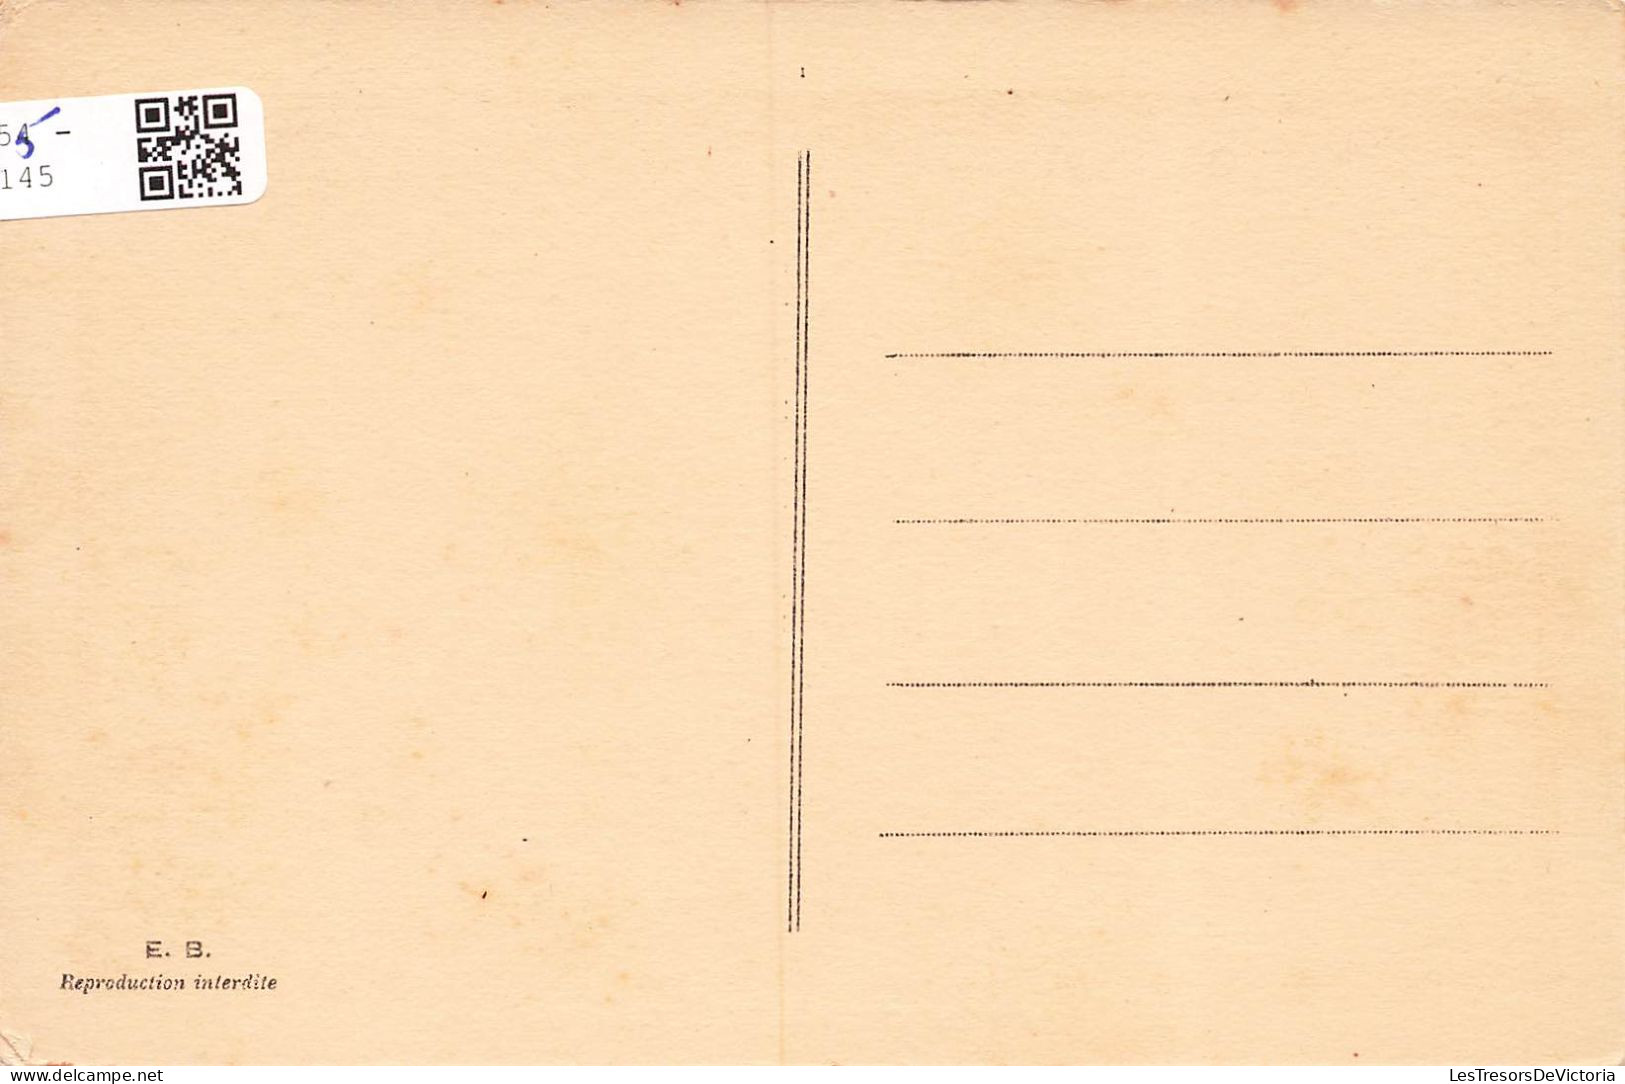 NOUVELLE CALEDONIE - Rivière  De Nassirah - Carte Postale Ancienne - Nieuw-Caledonië